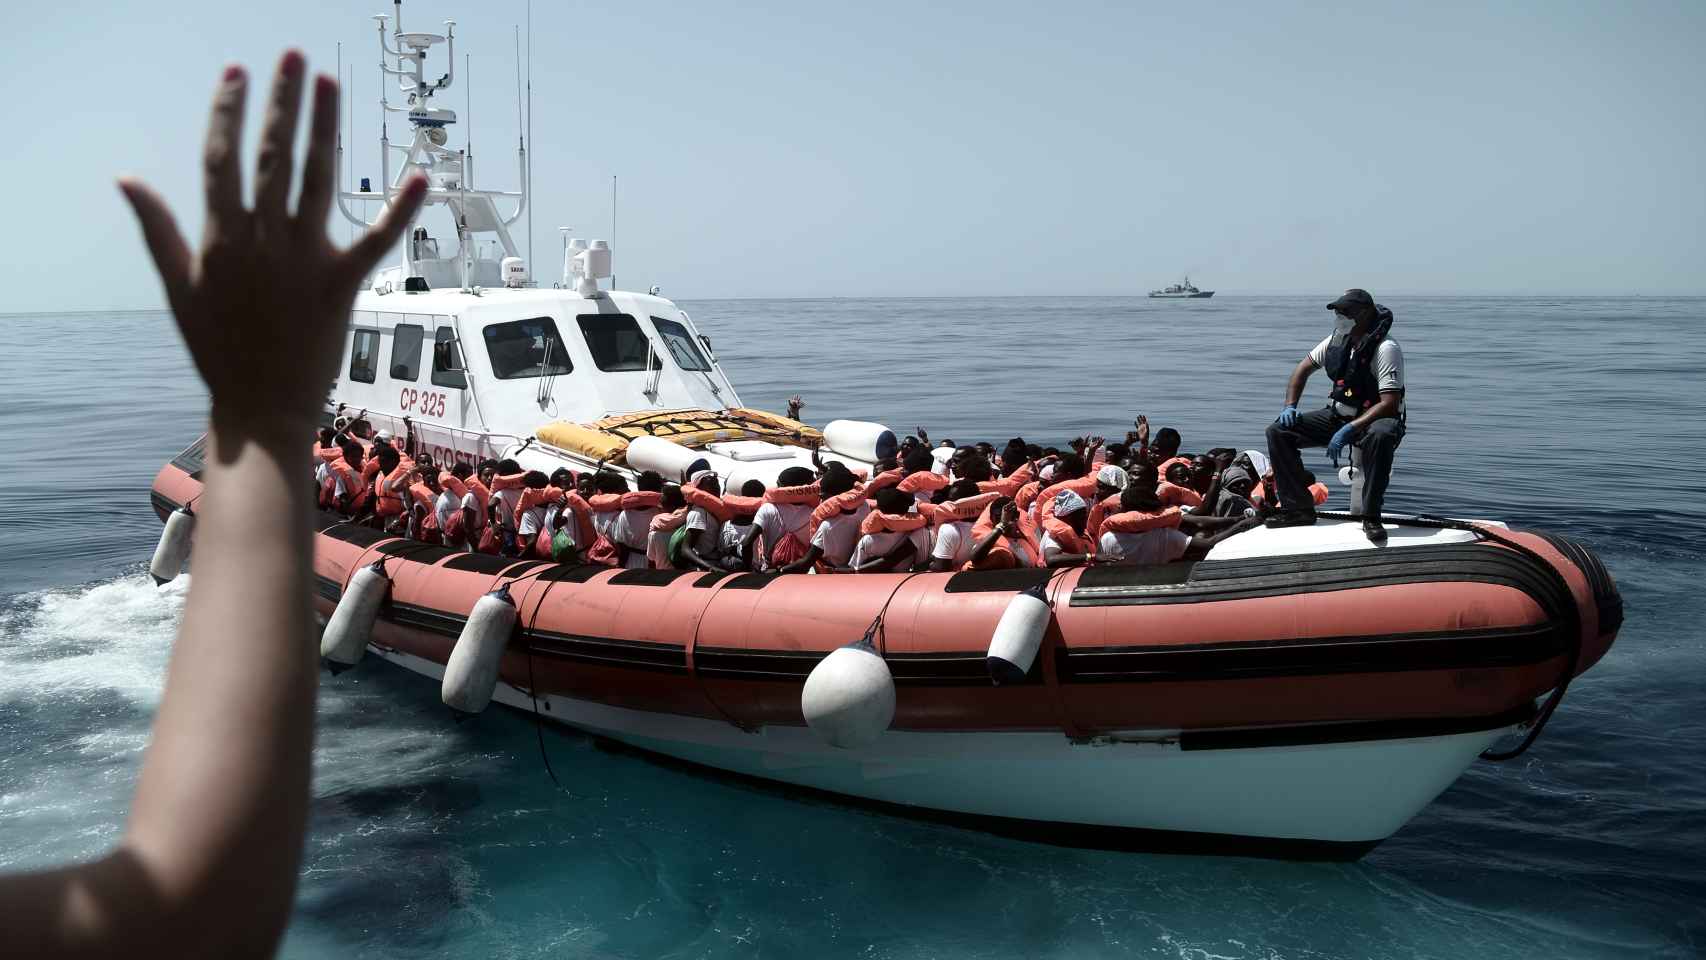 Imágenes del traslado de los inmigrantes del Aquarius a otra embarcación para llegar a Valencia